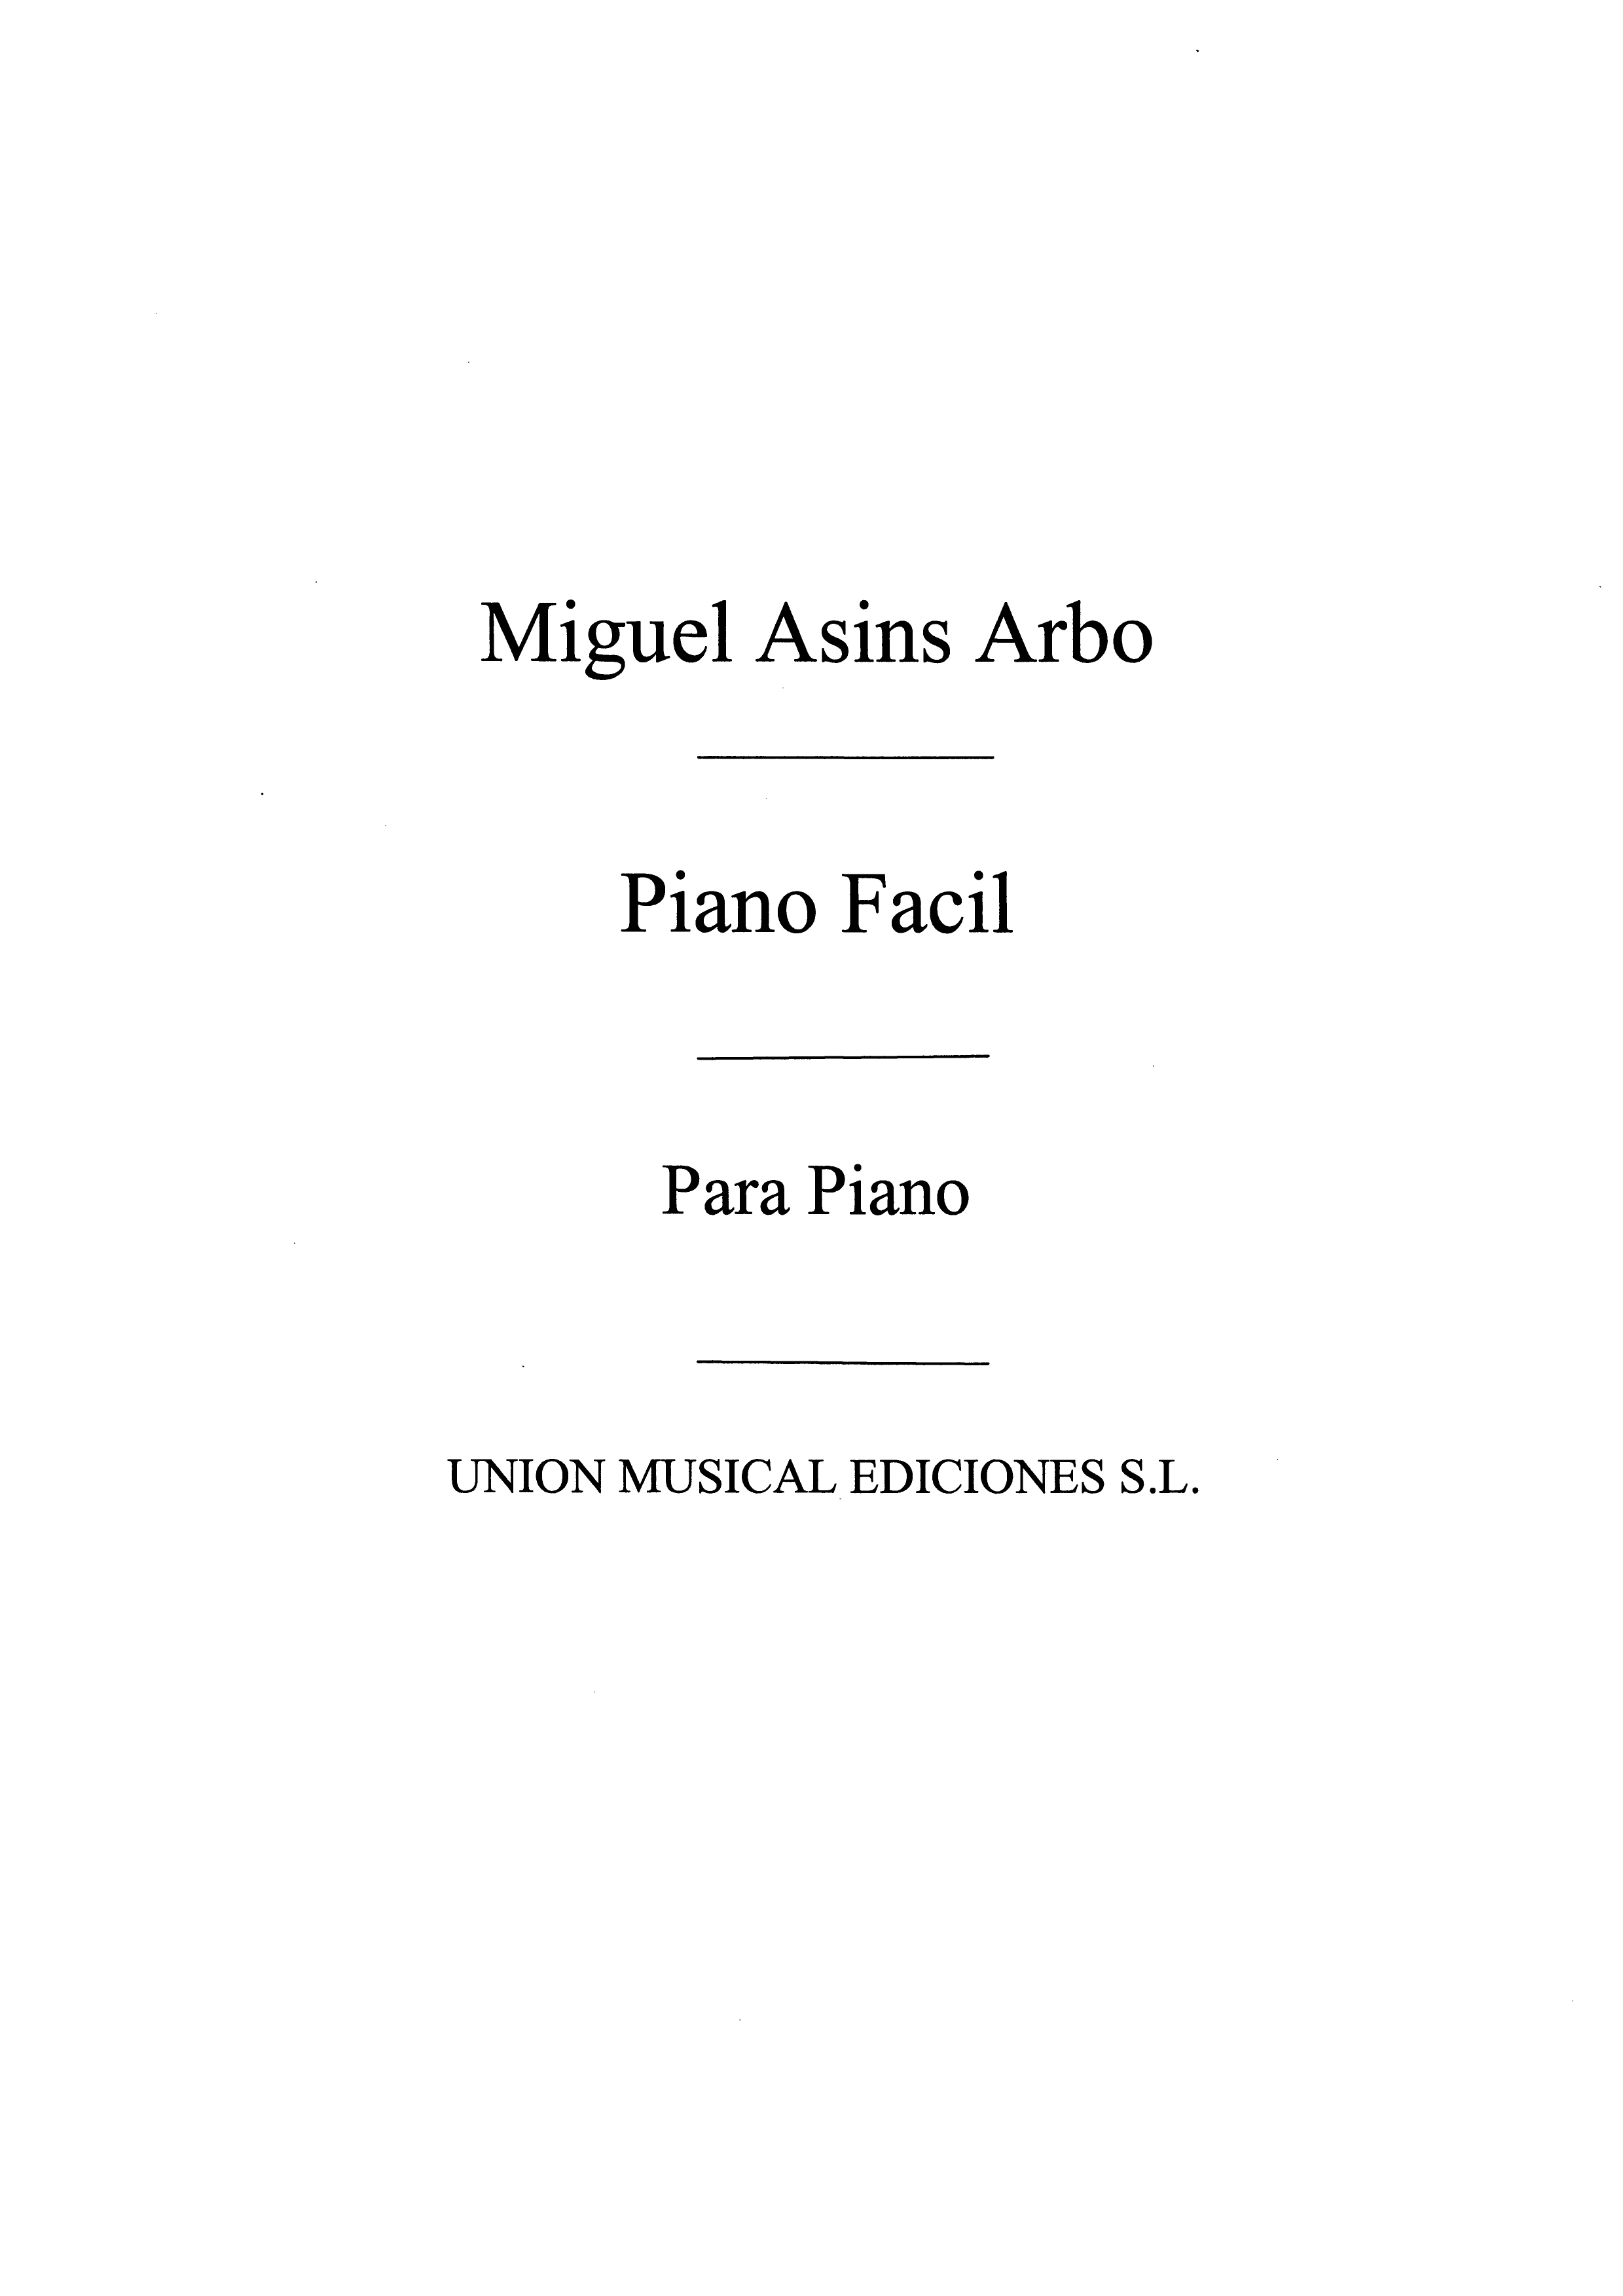 Miguel Asins Arbo: Piano Facil: Piano: Instrumental Album